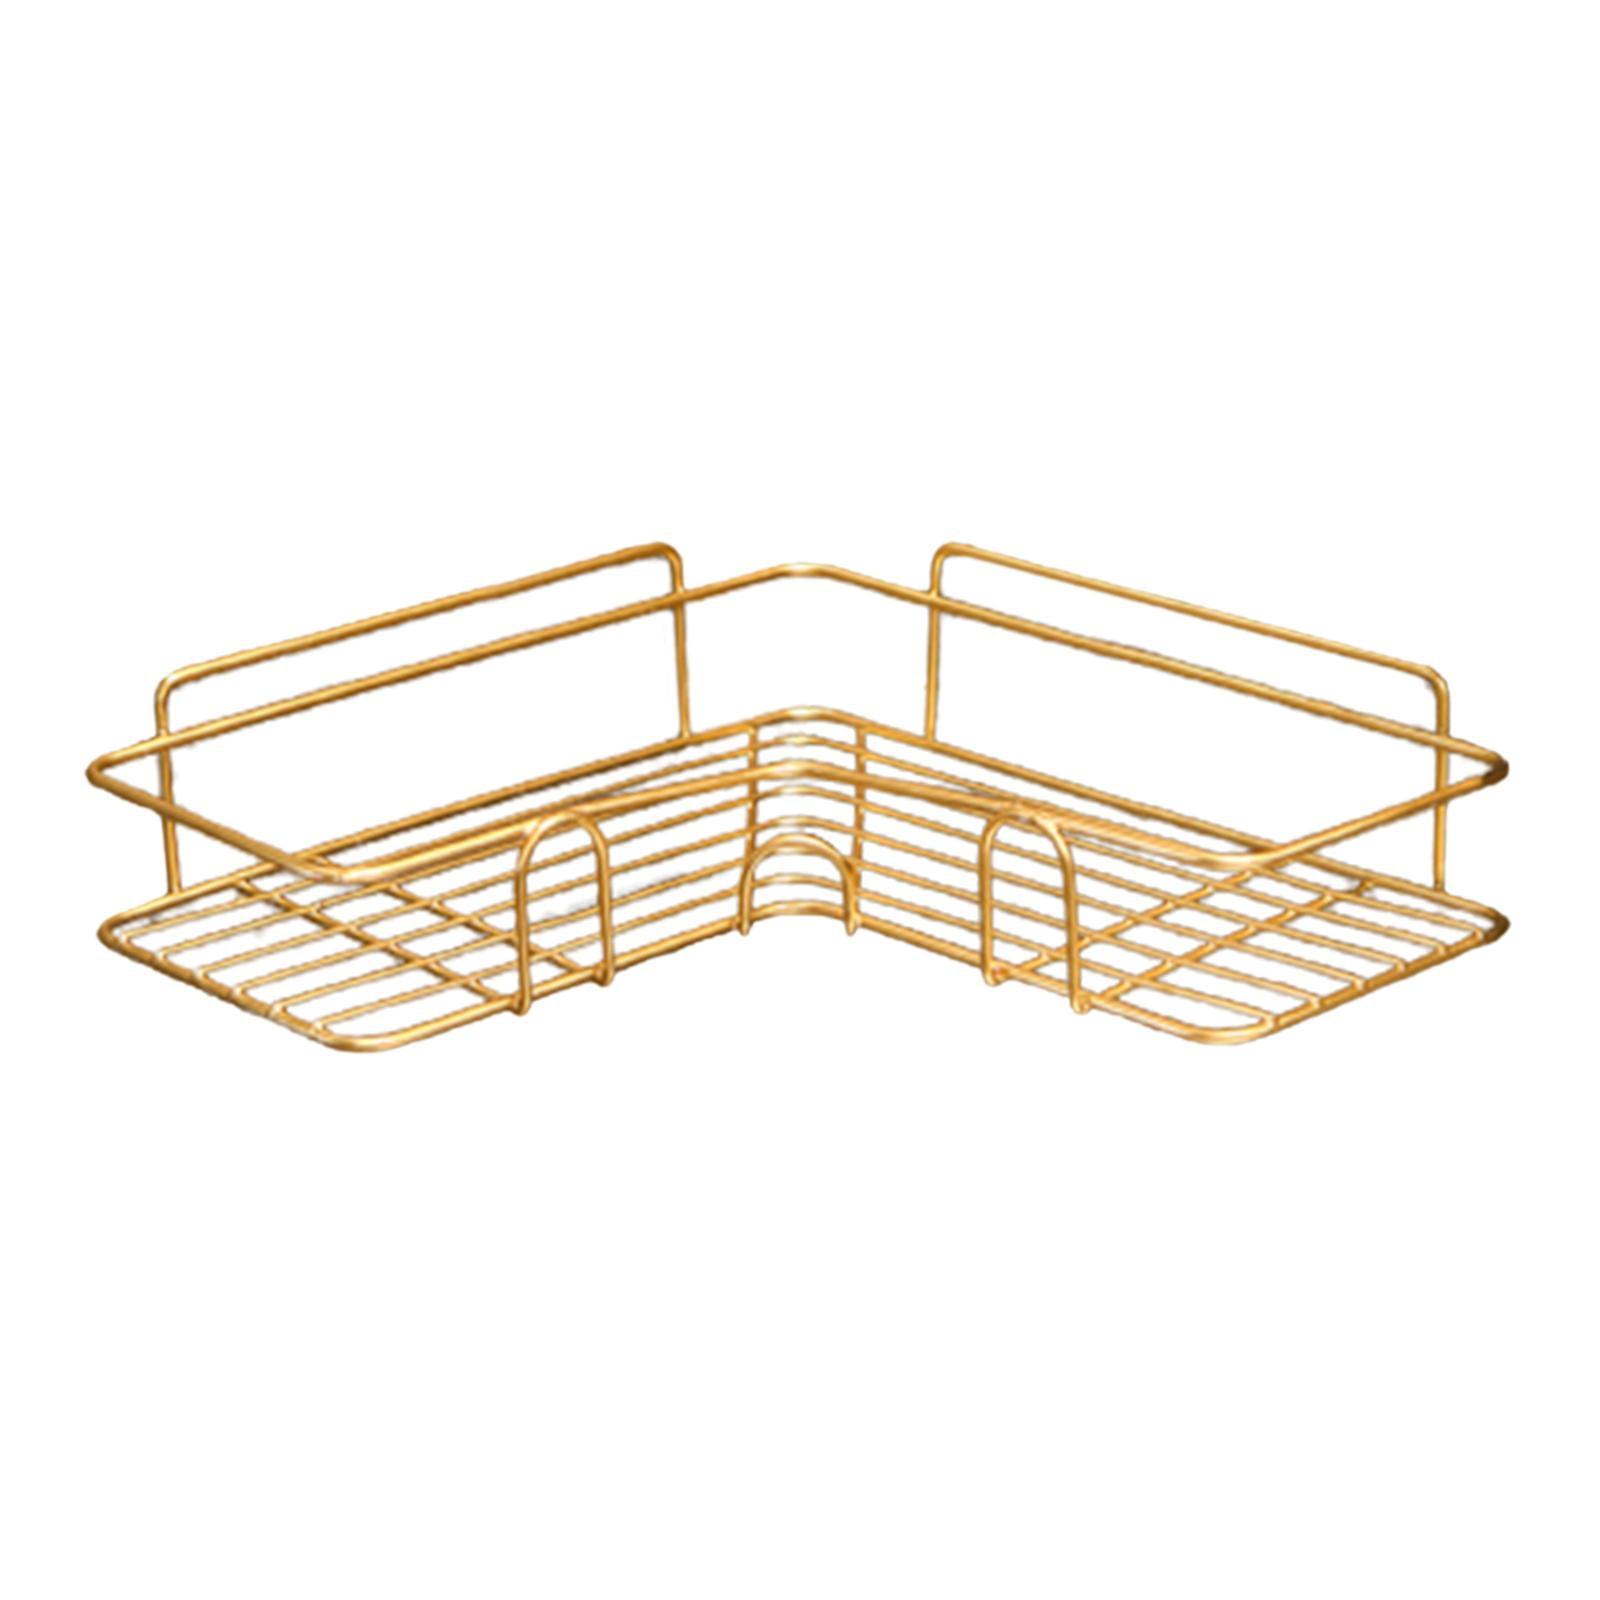  Orimade Rustproof 5 Tier Floor Standing Corner Shower Caddy  Organizer, Plastic Metal Splicing Floor Corner Shelf Rack Stands for  Bathroom, Black : Home & Kitchen